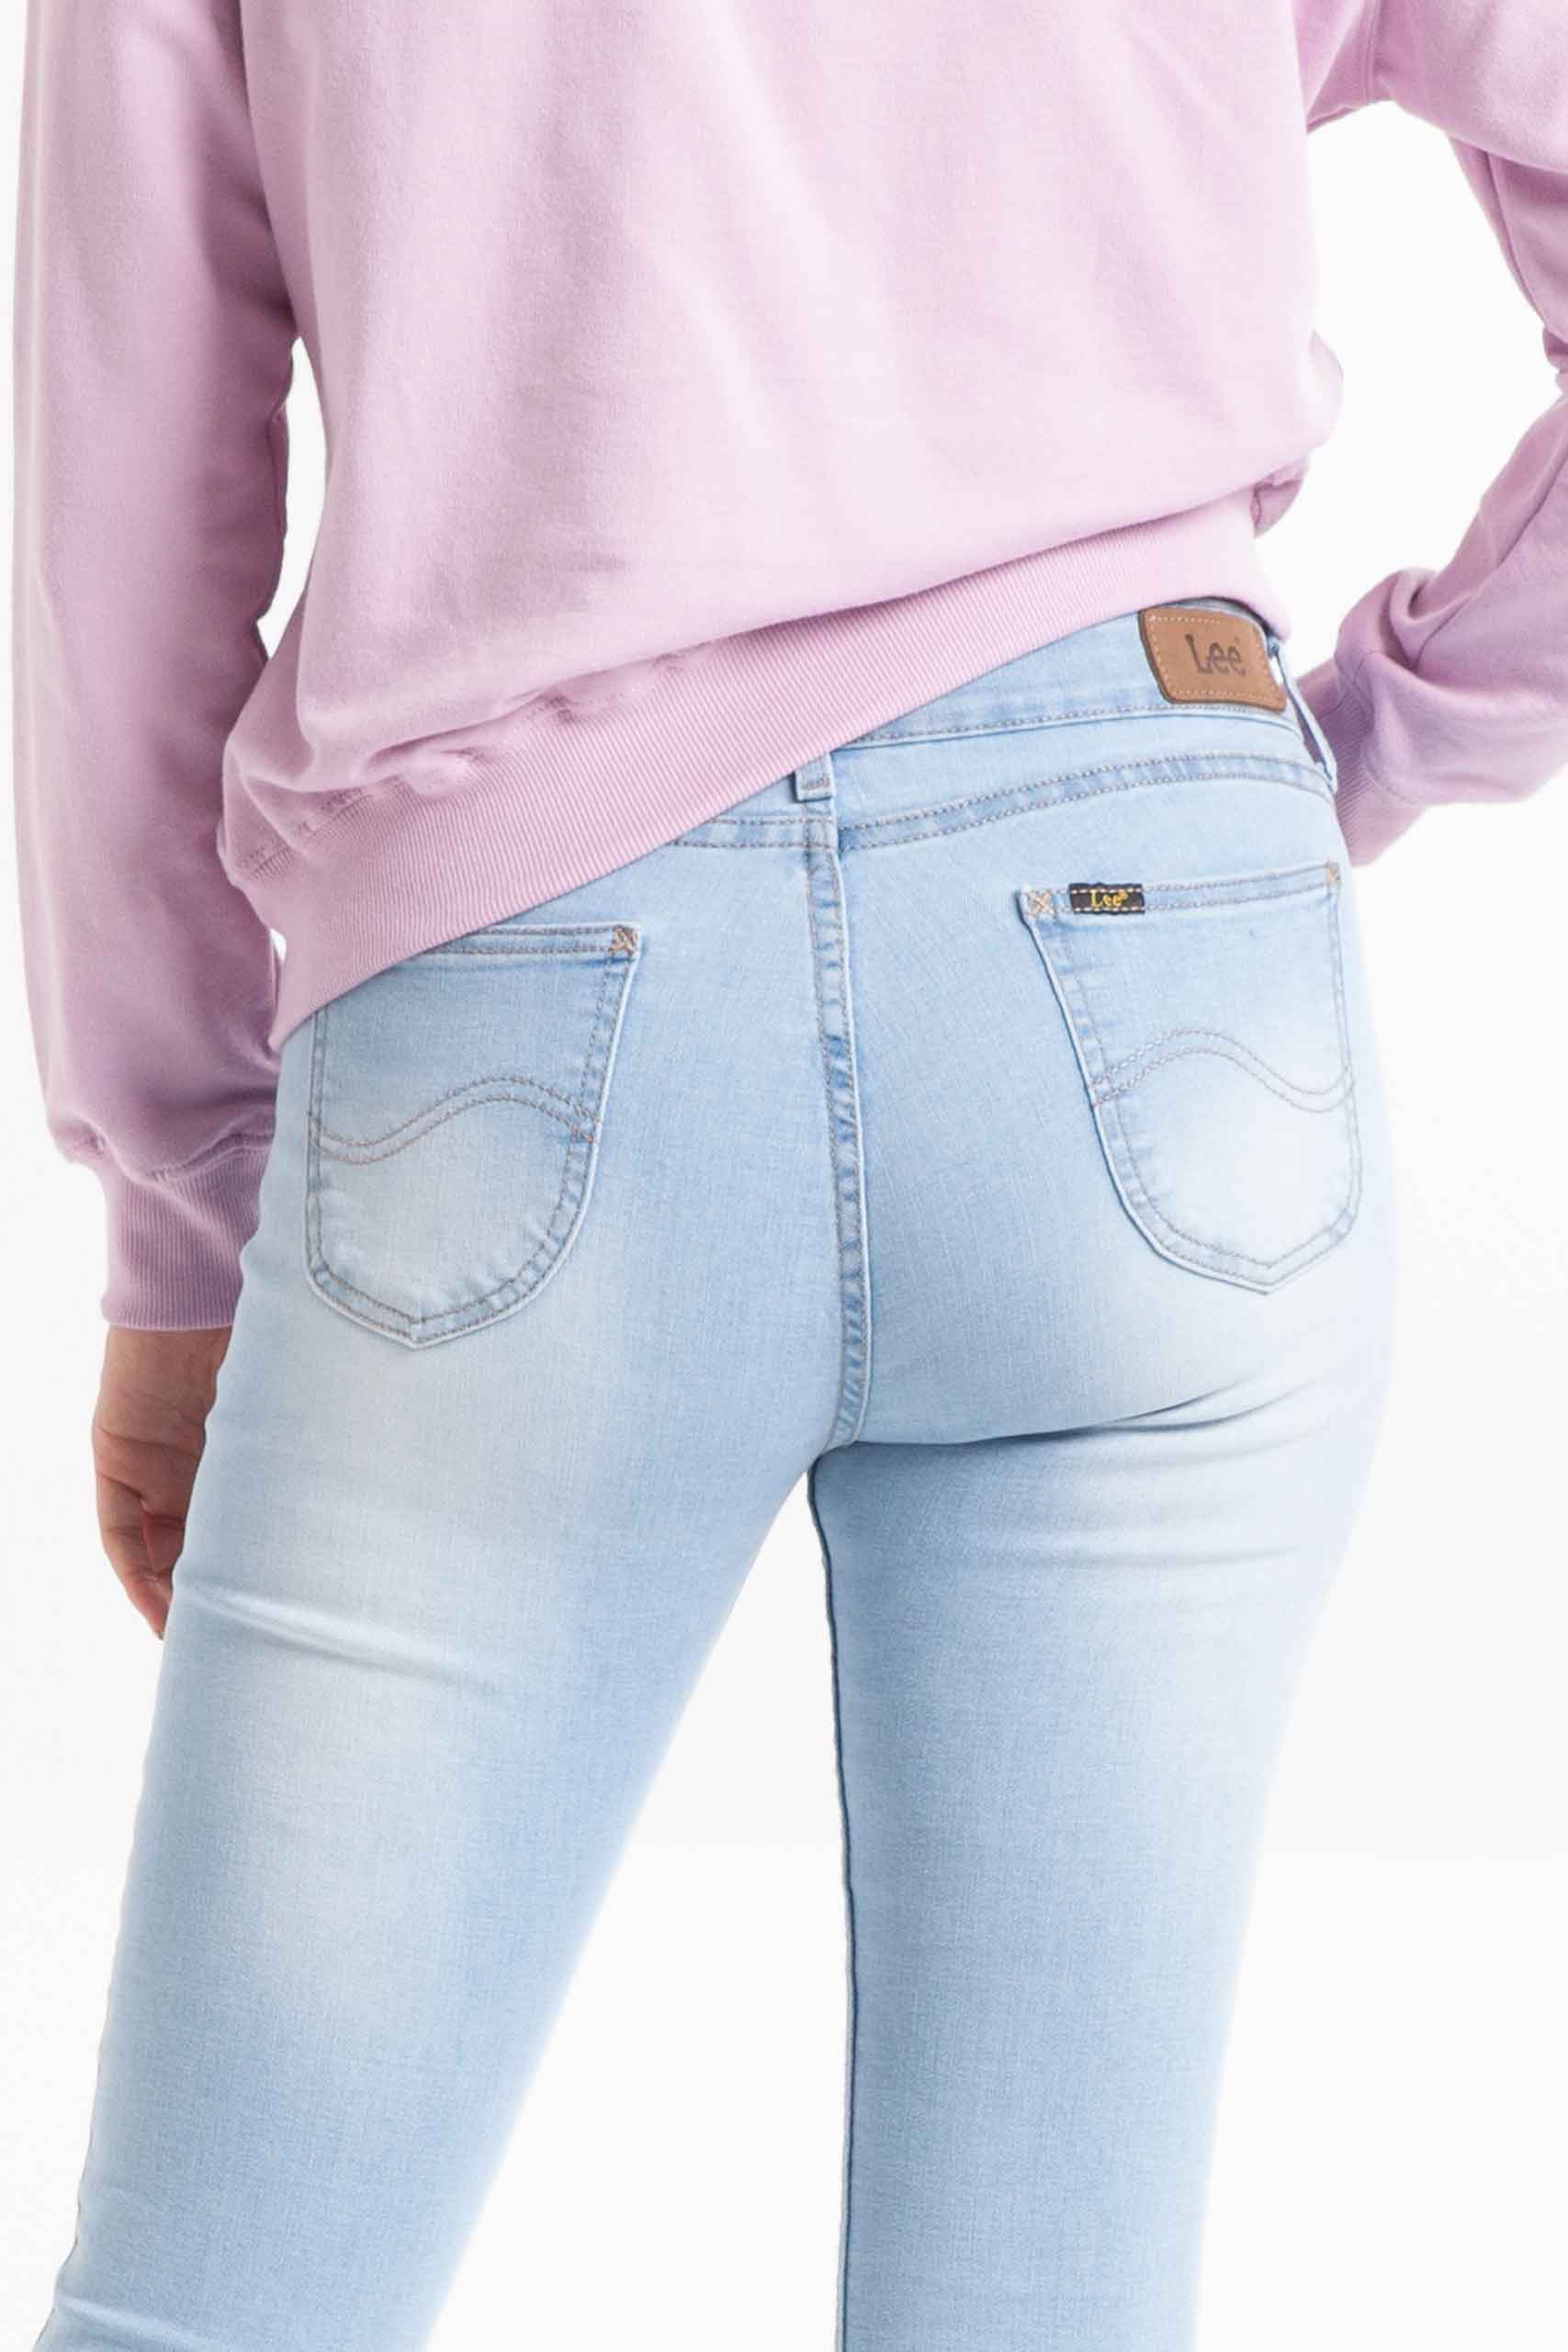 Vista posterior de jean de color azul de marca lee